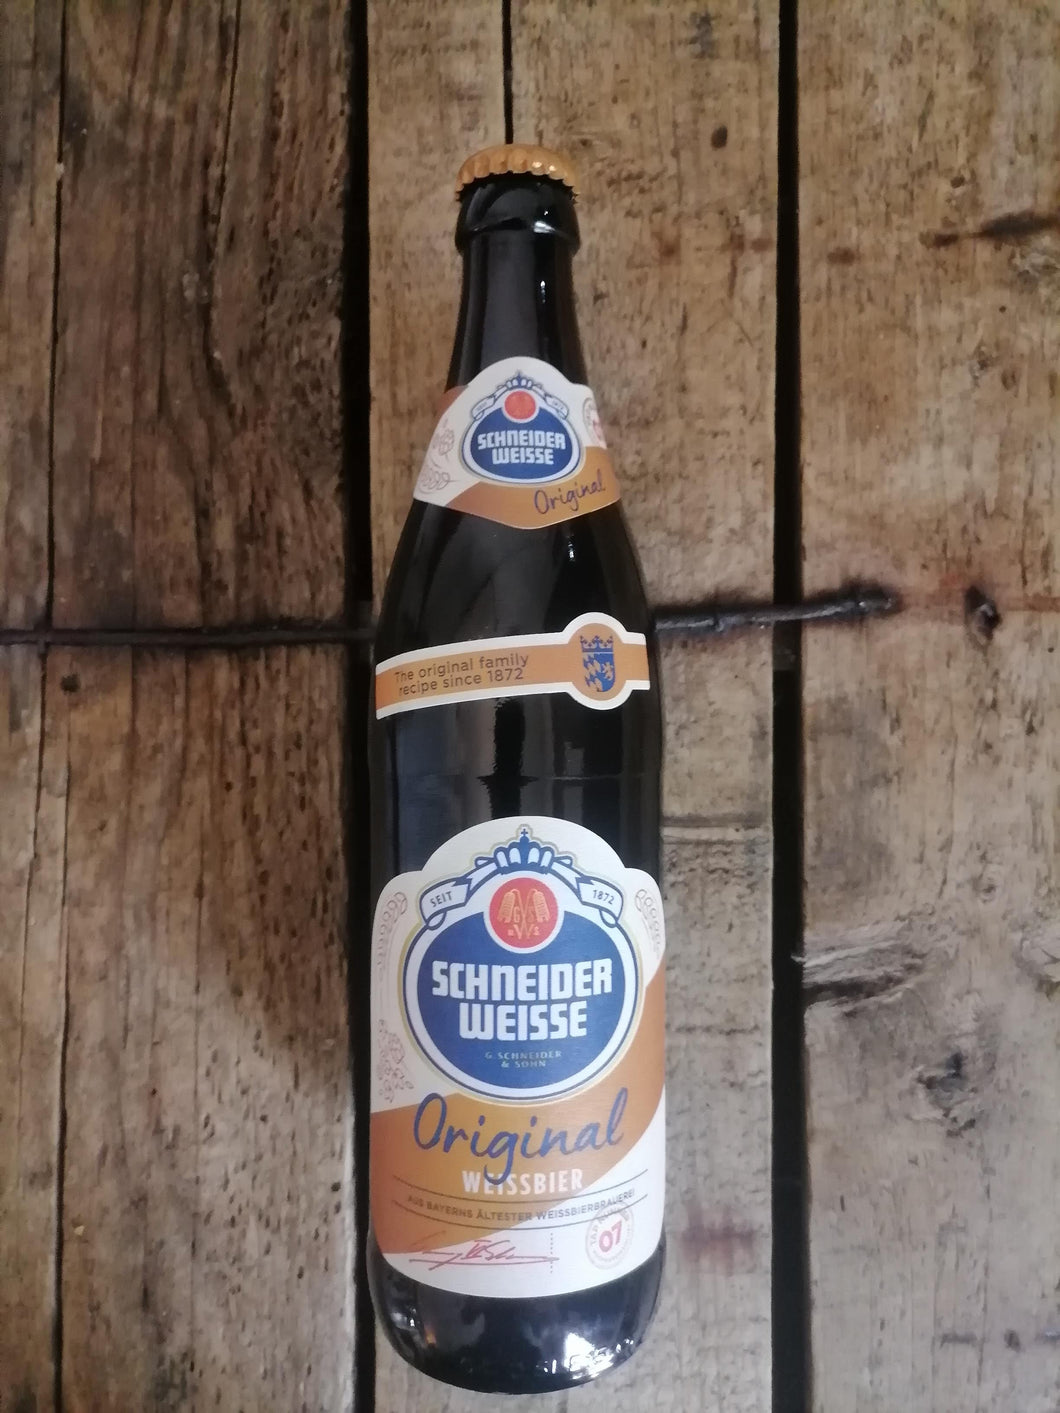 Schneider Weisse Original 5.4% (500ml bottle)